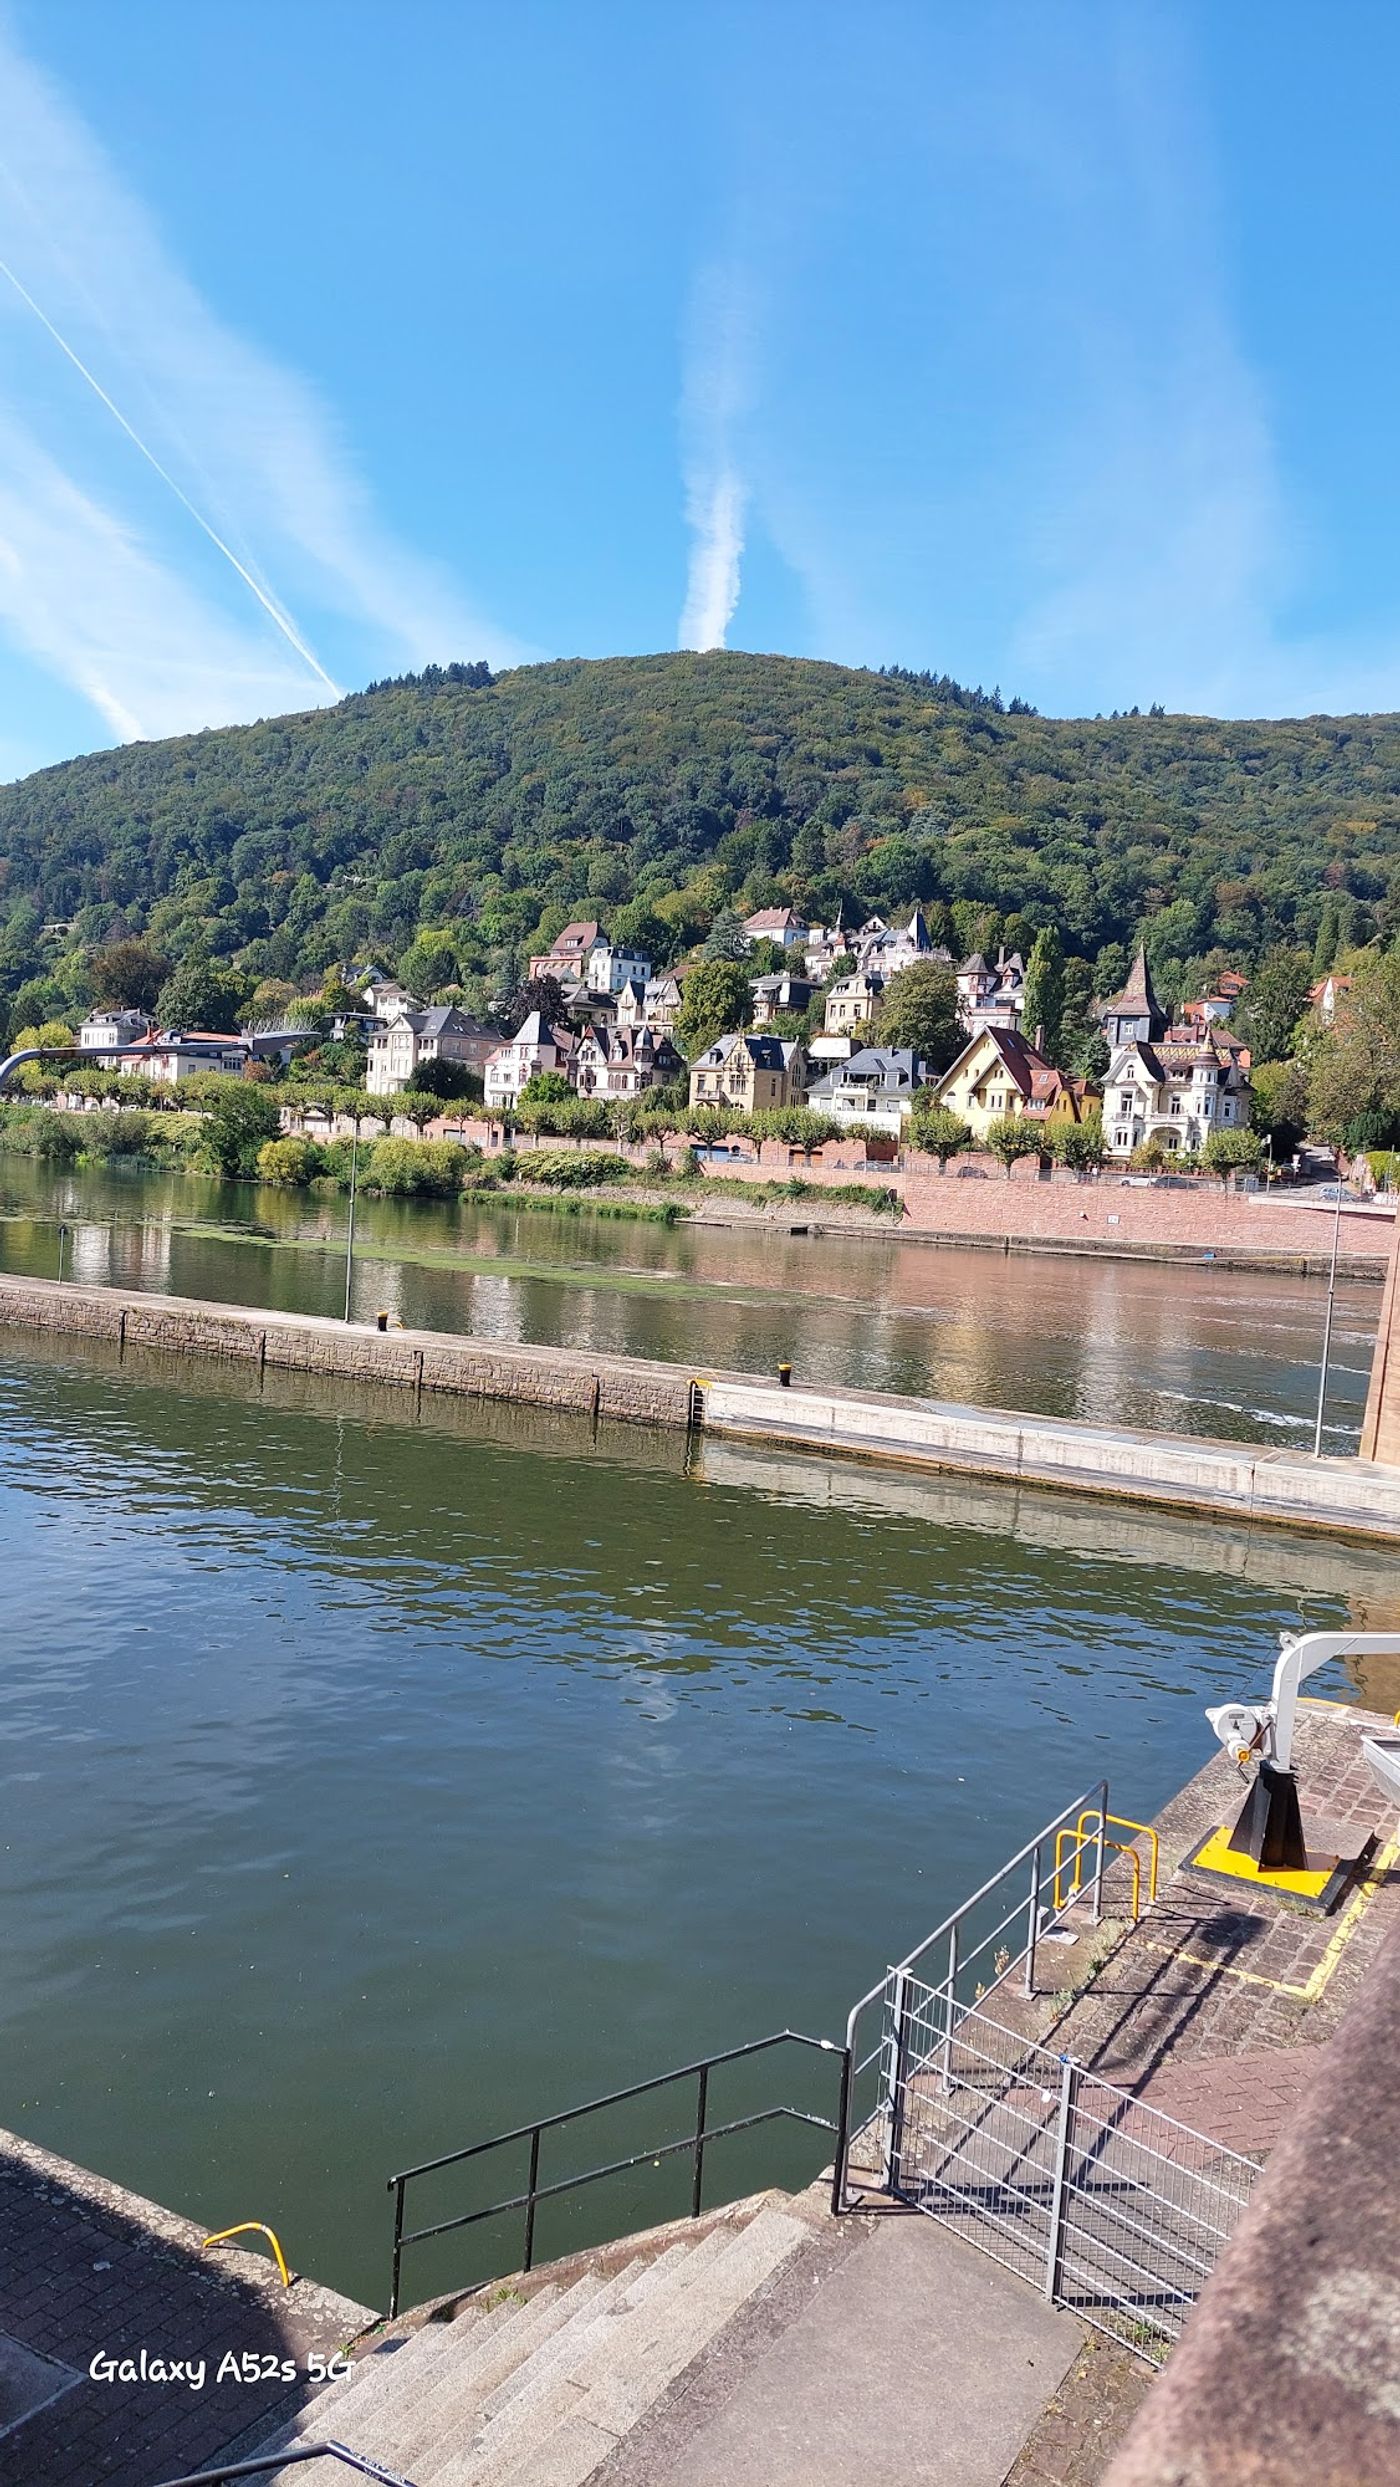 Tor zur Heidelberger Geschichte